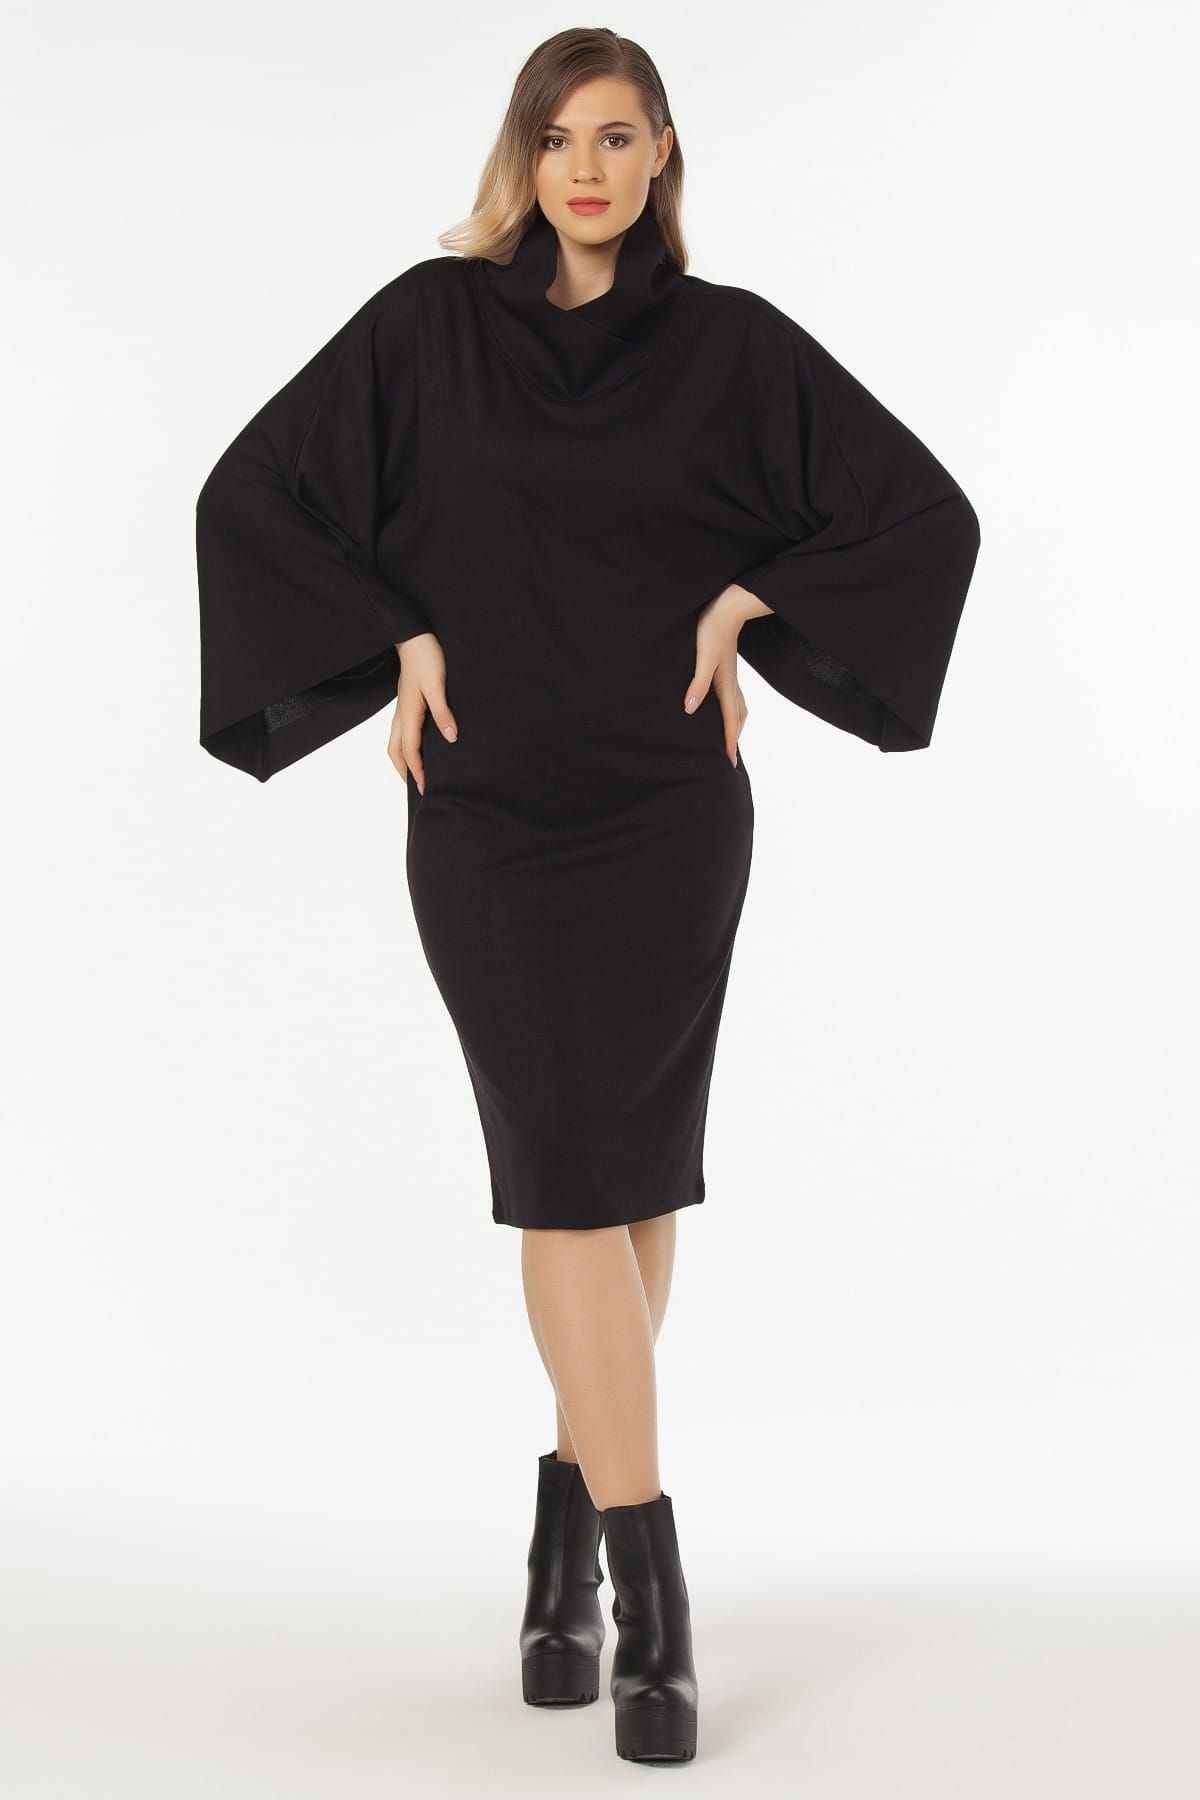 Laranor Kadın Siyah Yaka Ve Kol Detaylı Elbise 19LB9160